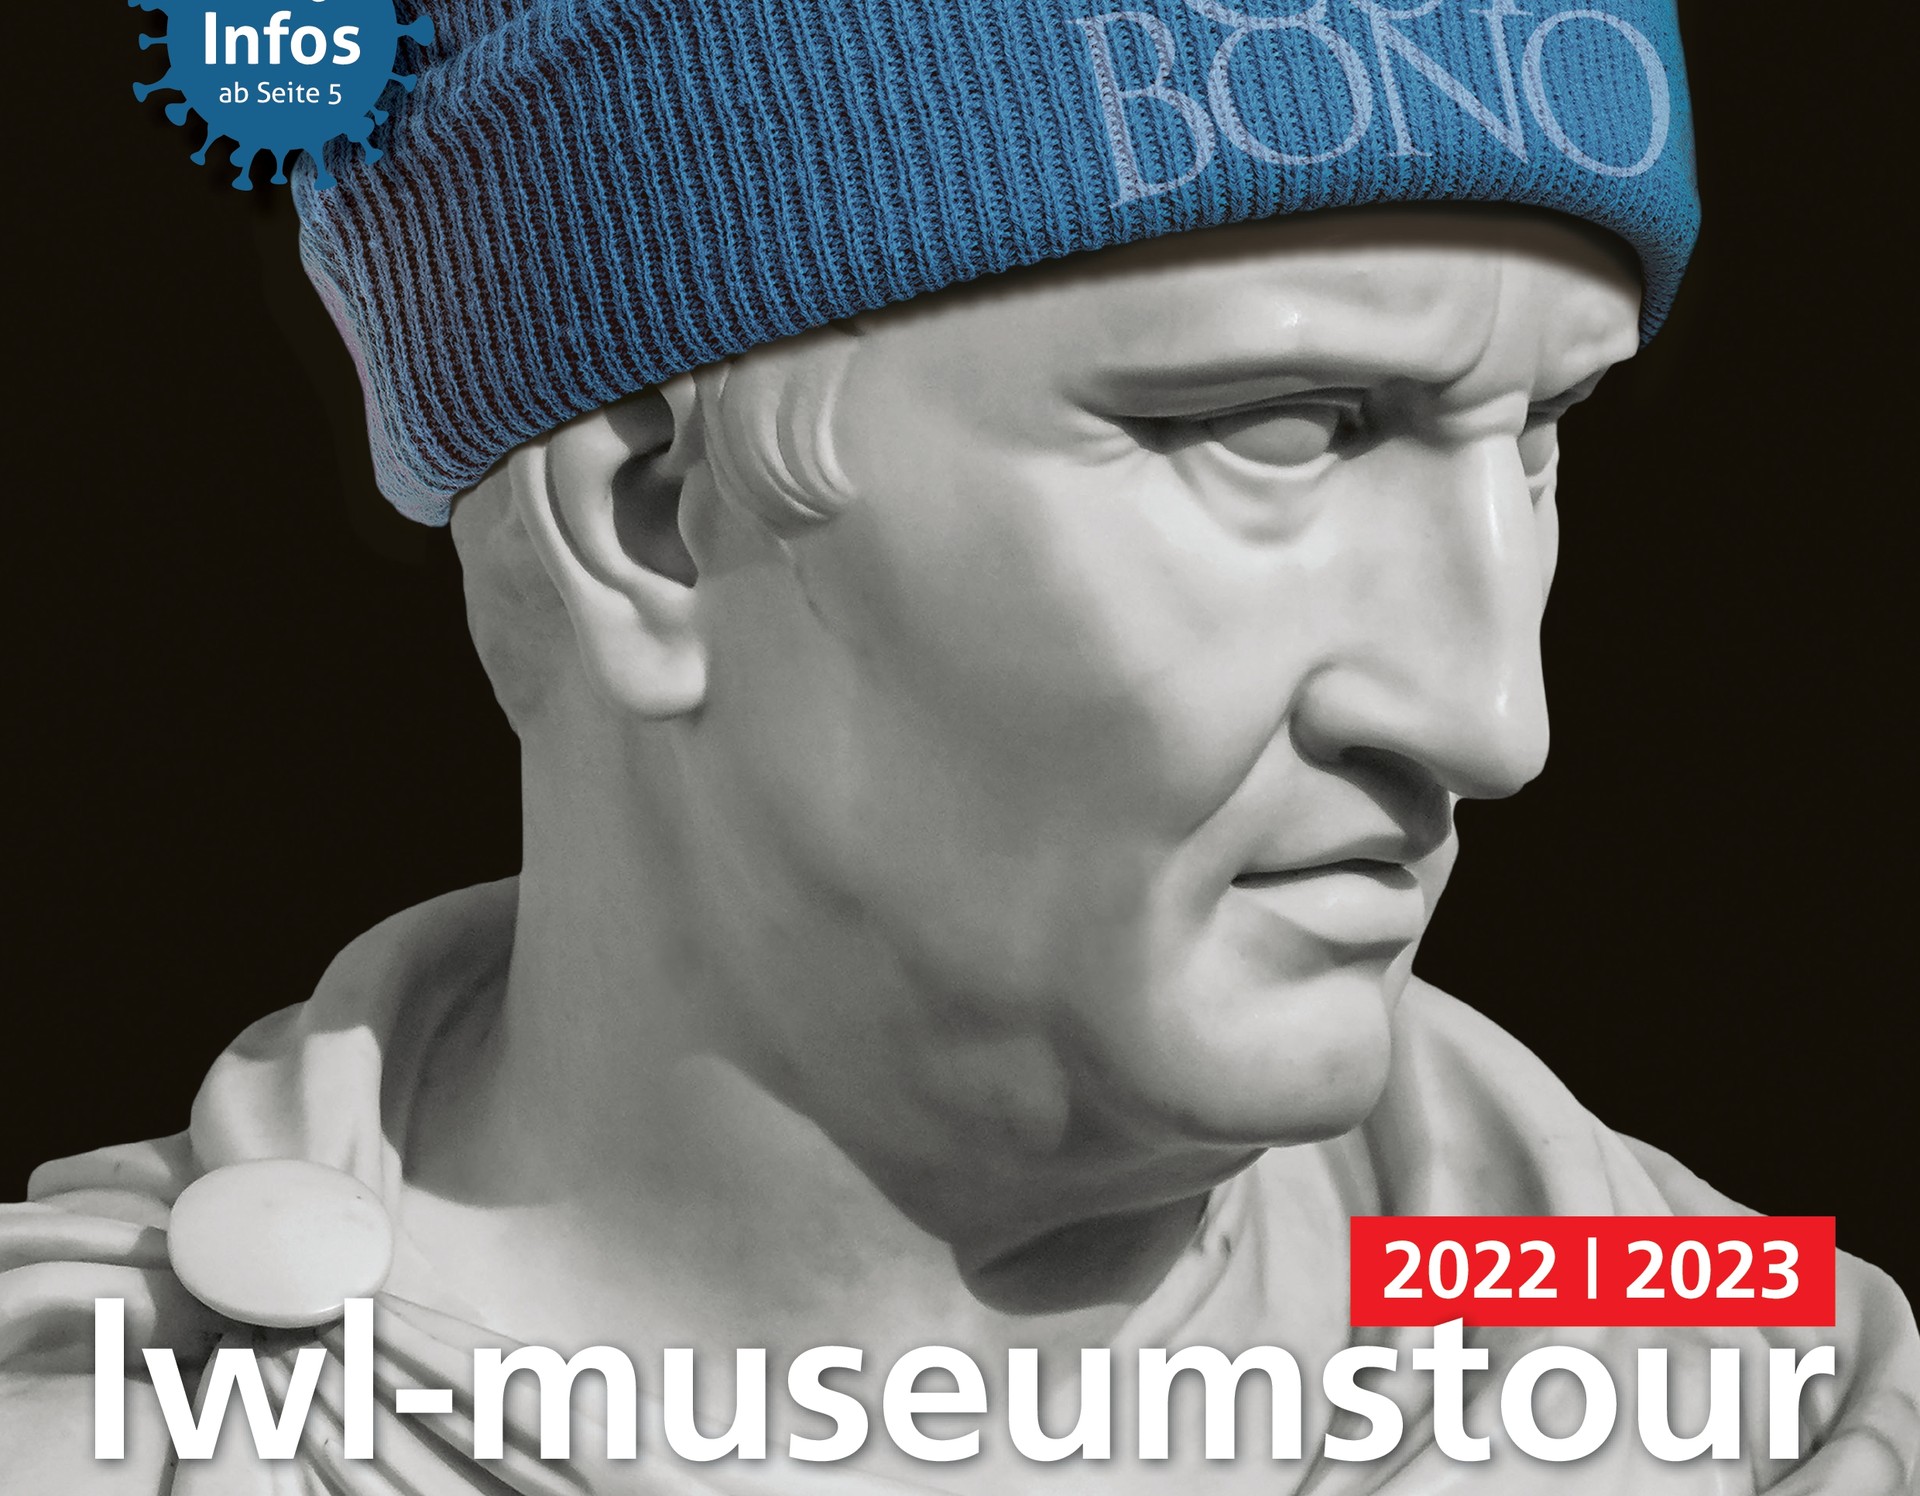 Titelbild der LWL-Museumstour 2022/2023: Eine Büste von Marcus Tullius Cicero, die eine blaue Mütze mit der Aufschrift "Cui bono" trägt.